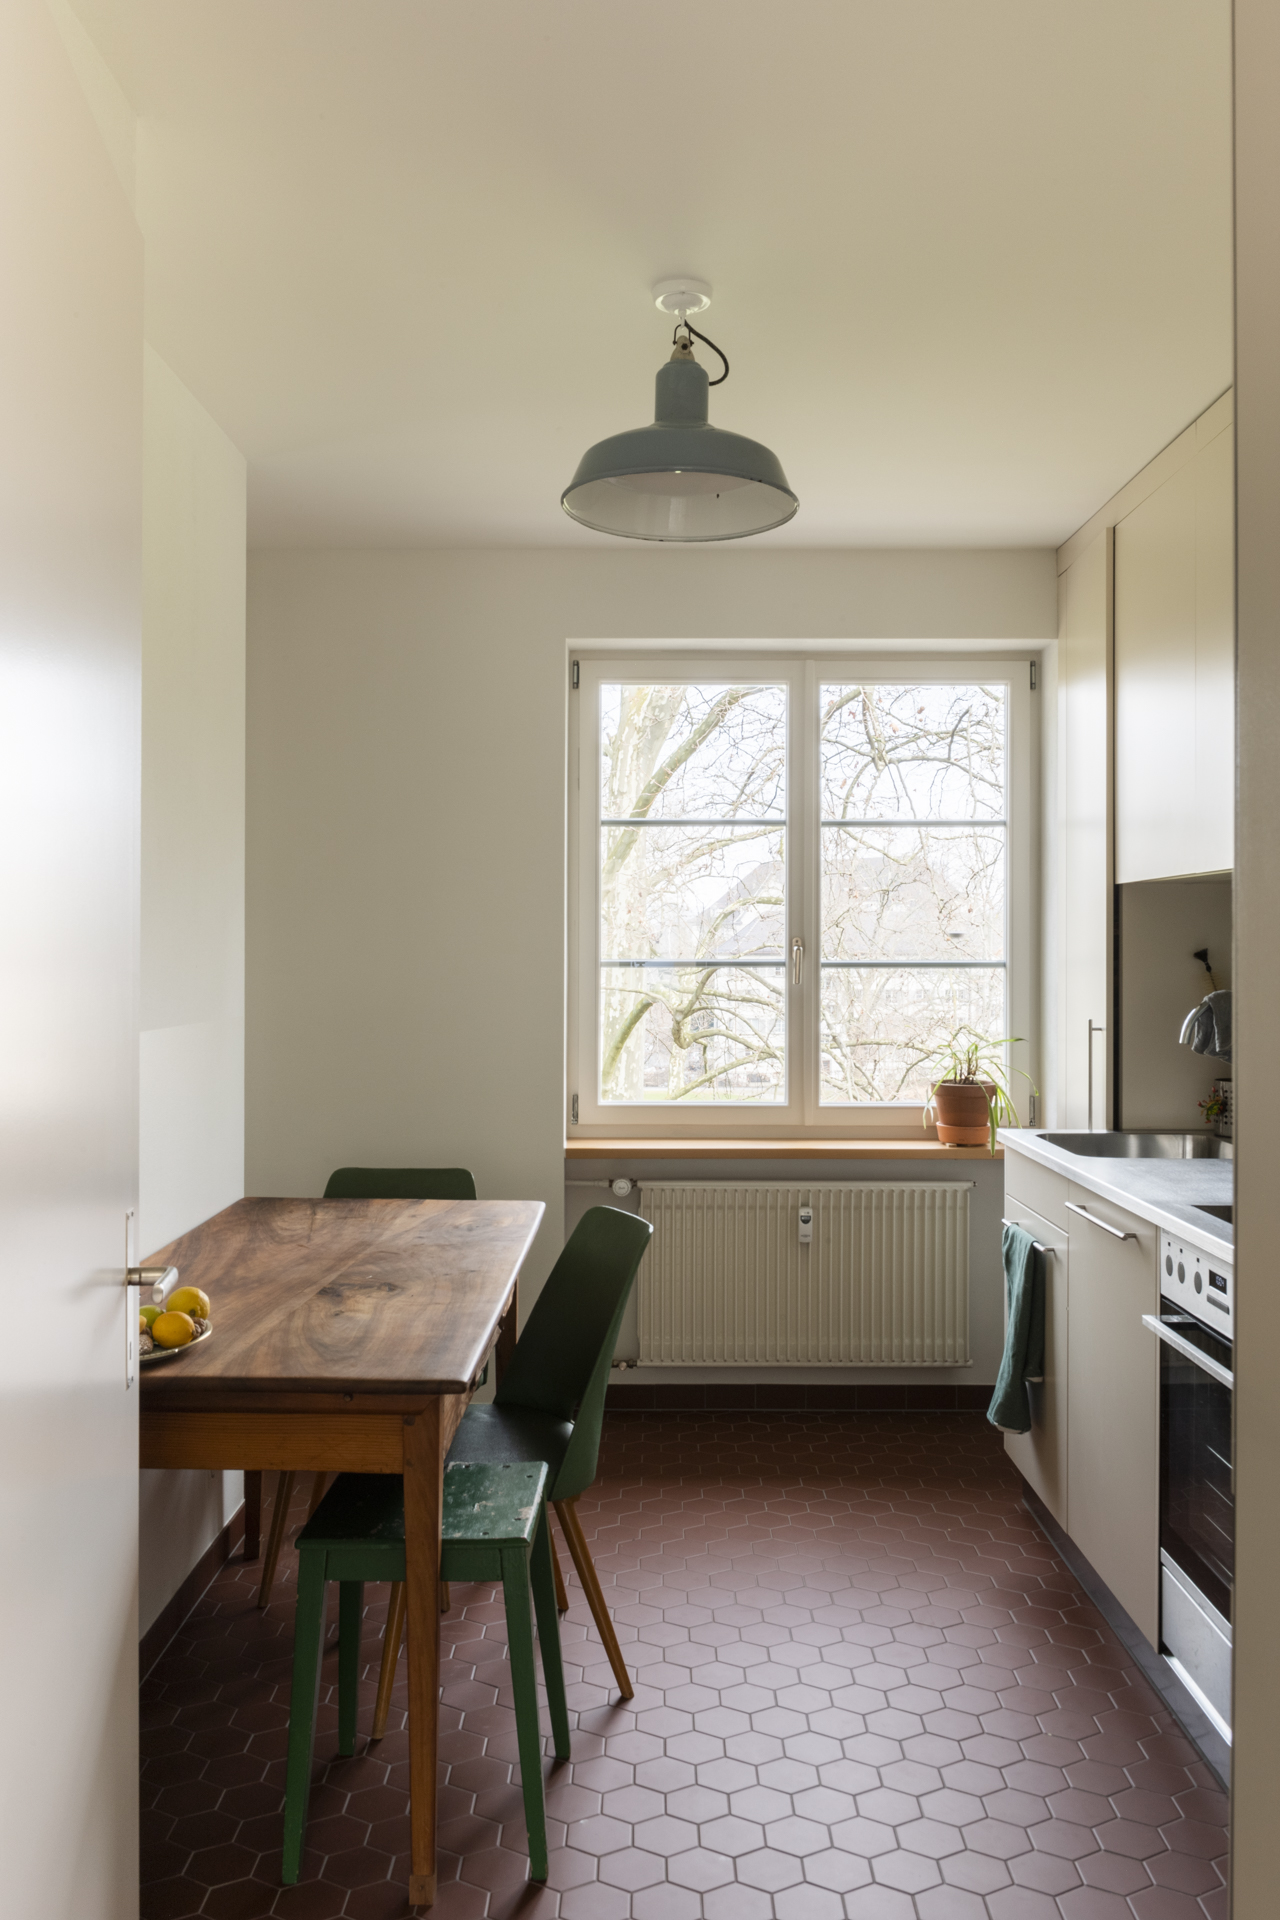 Blick in eine frisch sanierte Küche der Wohnsiedlung Bullingerhof